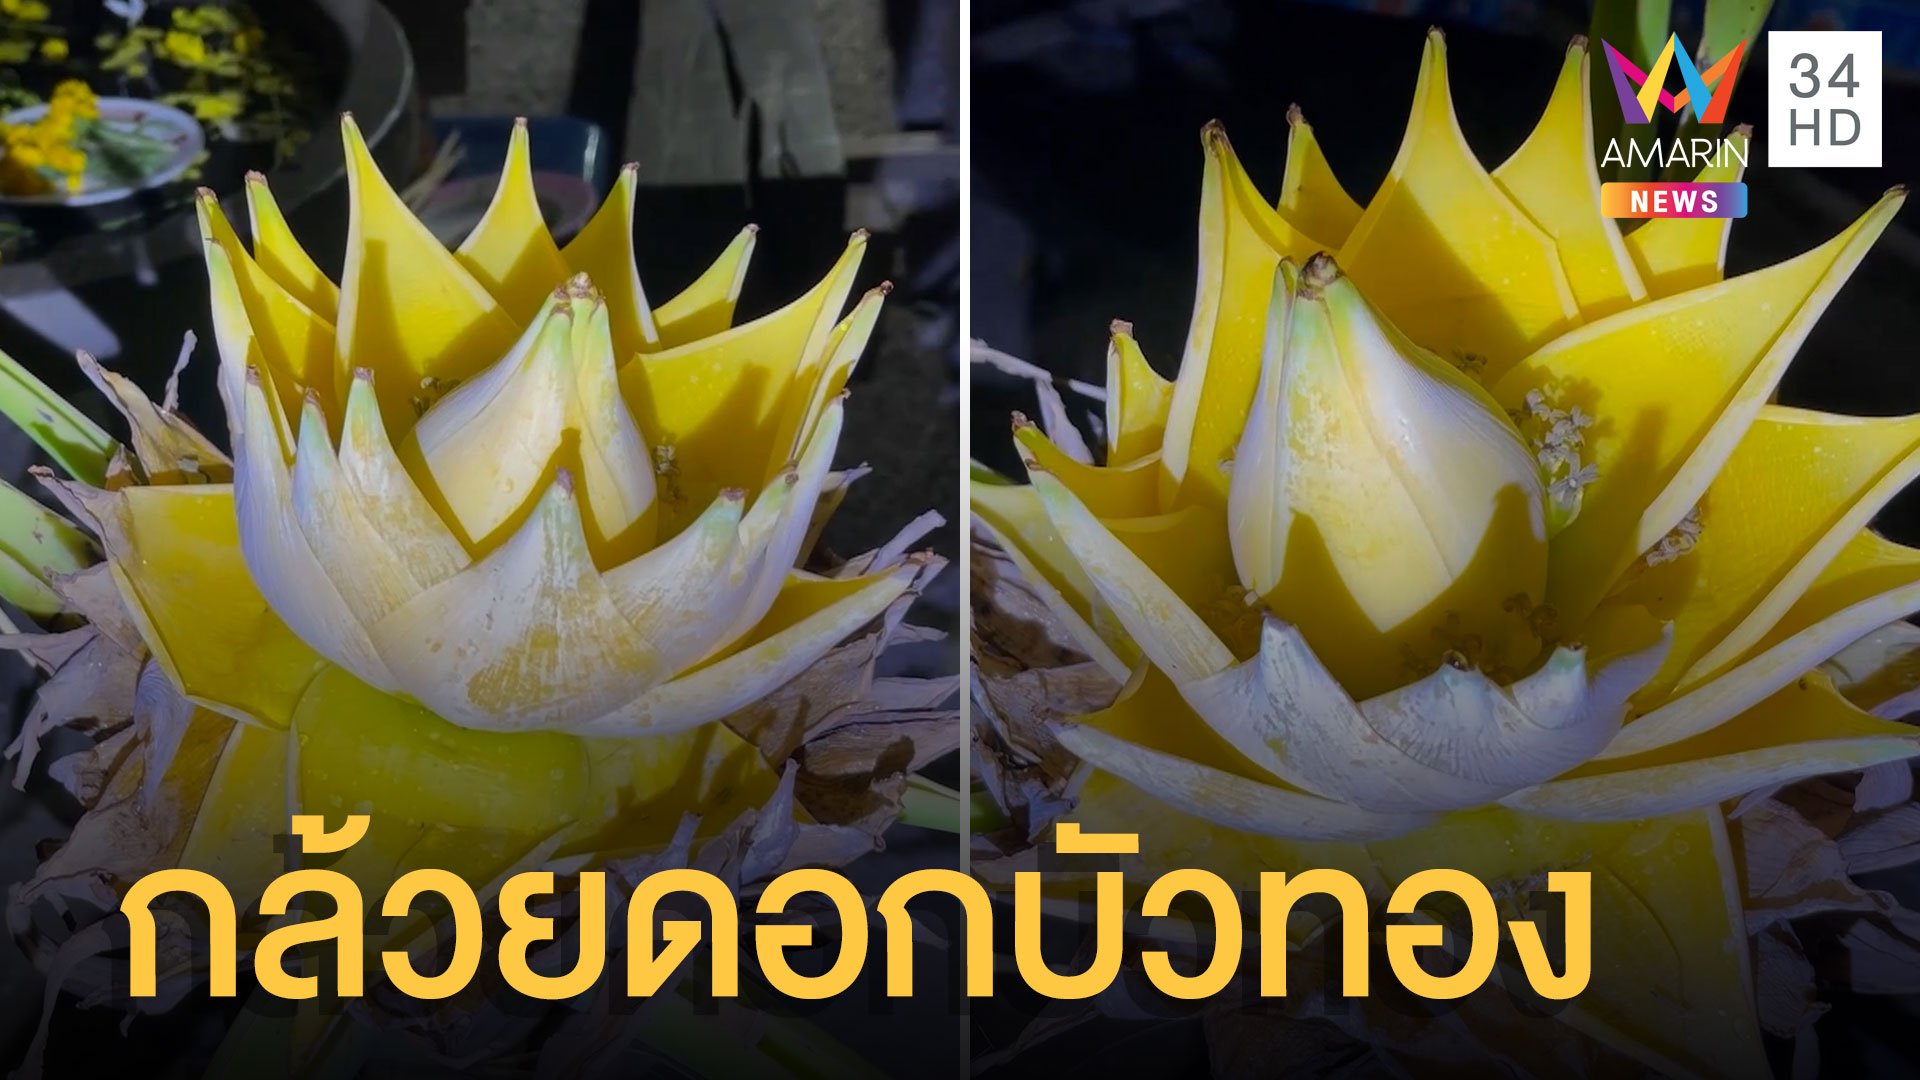 ต้นกล้วยประหลาดออกดอกคล้ายดอกบัวทอง | ข่าวอรุณอมรินทร์ | 16 เม.ย. 65 | AMARIN TVHD34